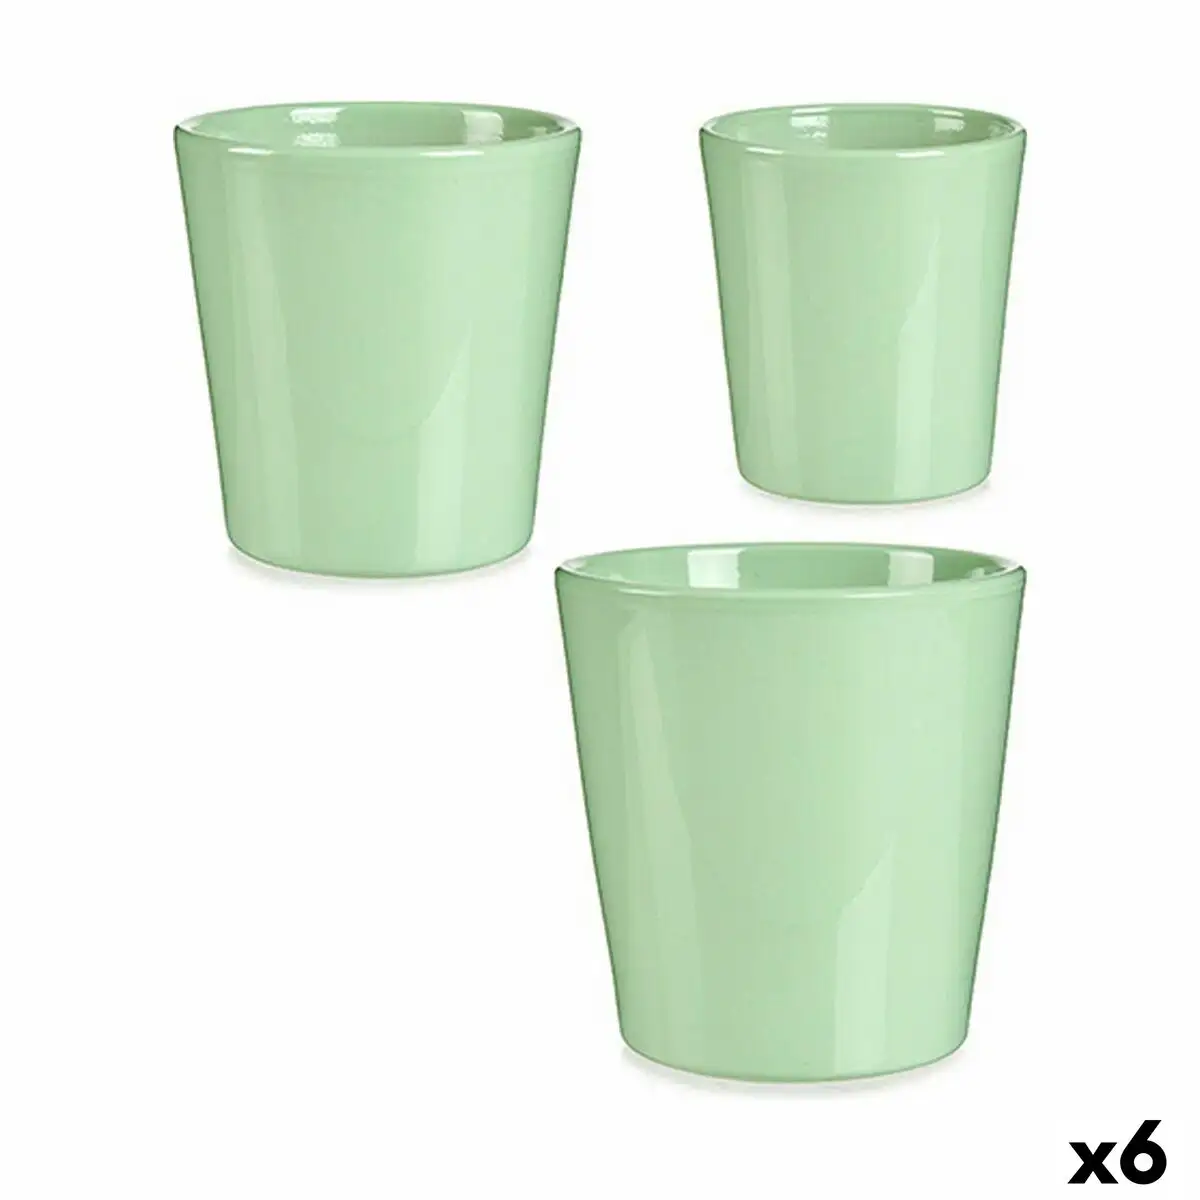 Set de pots vert argile 6 unites _8823. DIAYTAR SENEGAL - Votre Portail Vers l'Exclusivité. Explorez notre boutique en ligne pour trouver des produits uniques et exclusifs, conçus pour les amateurs de qualité.